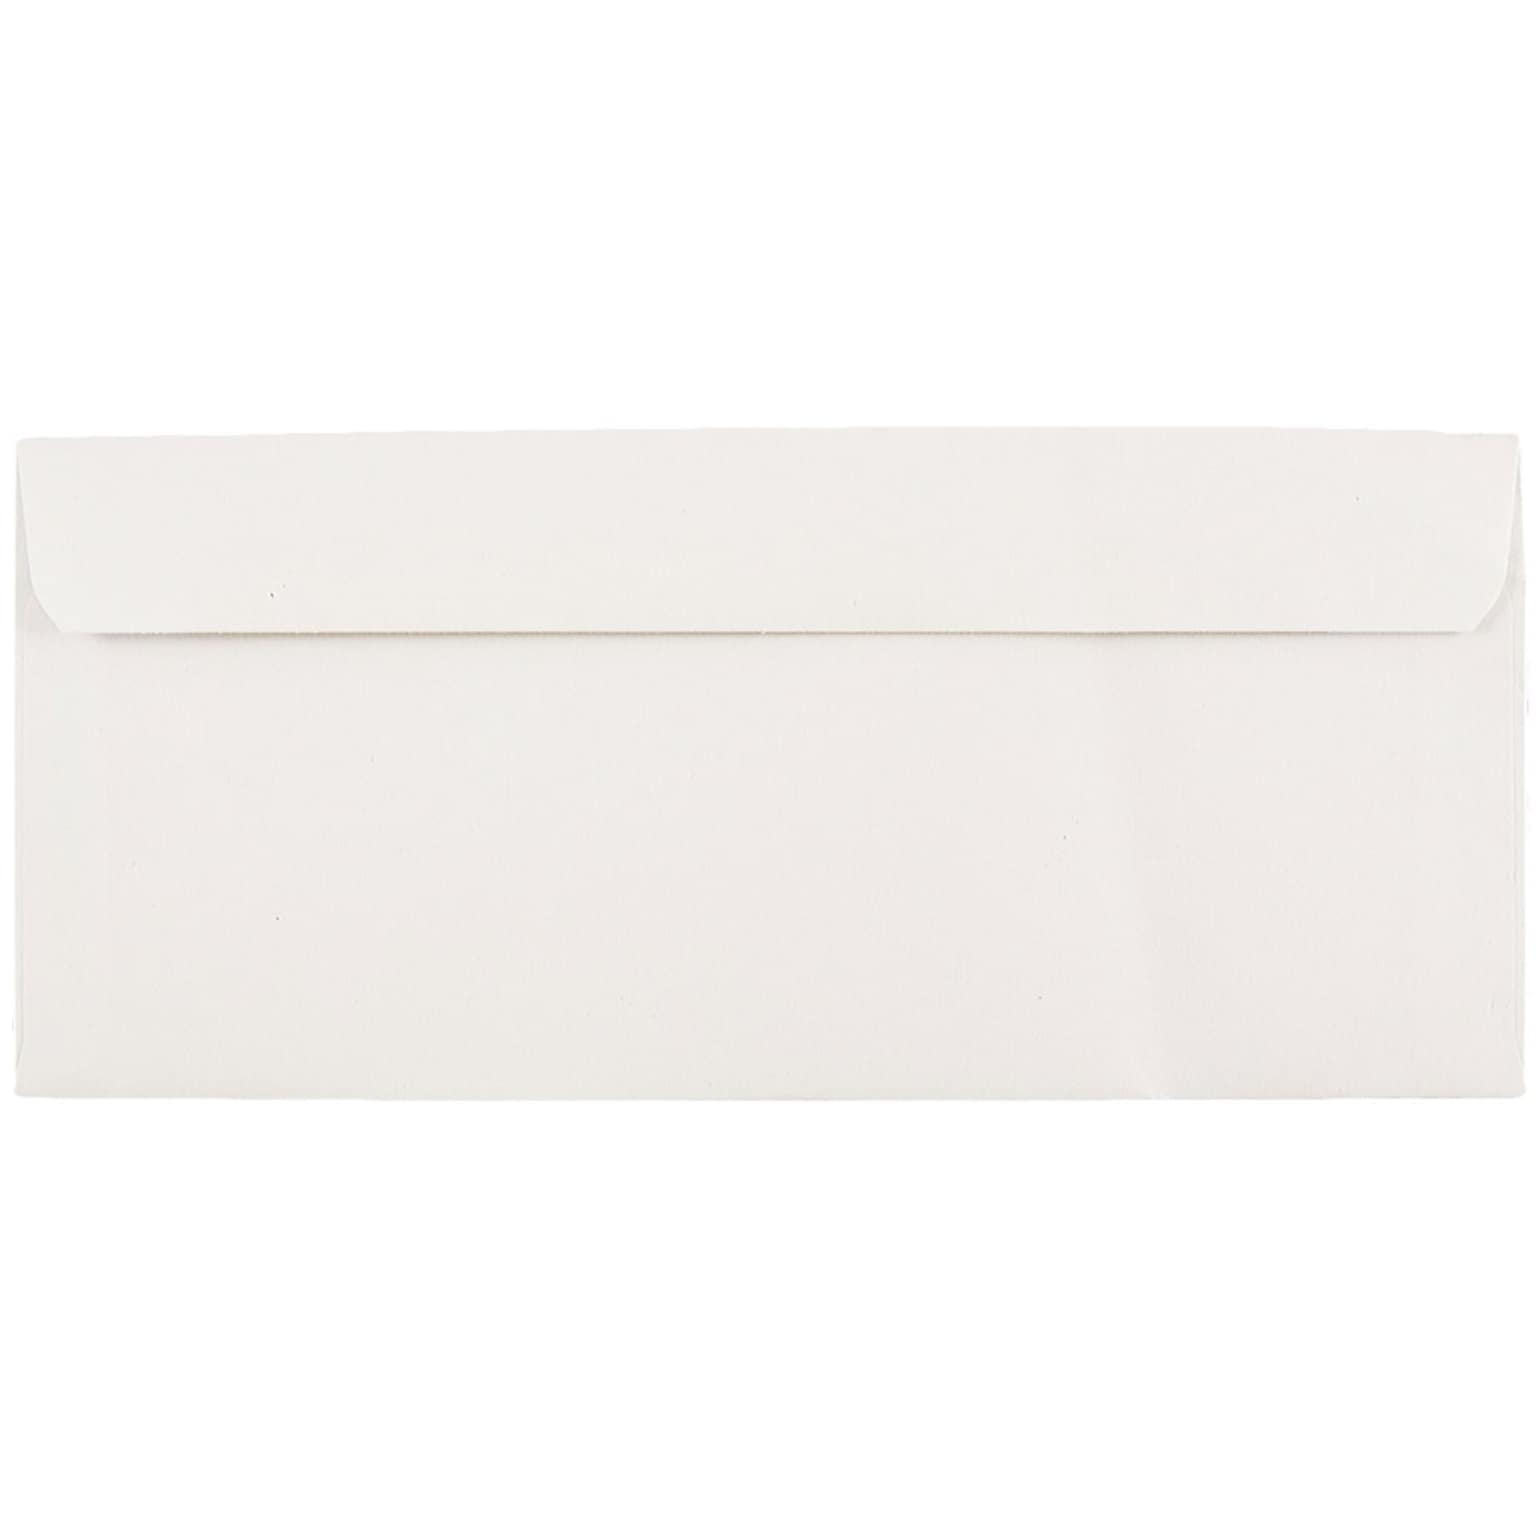 JAM Paper® #9 Business Commercial Envelopes, 3.875 x 8.875, White, 25/Pack (1633172)